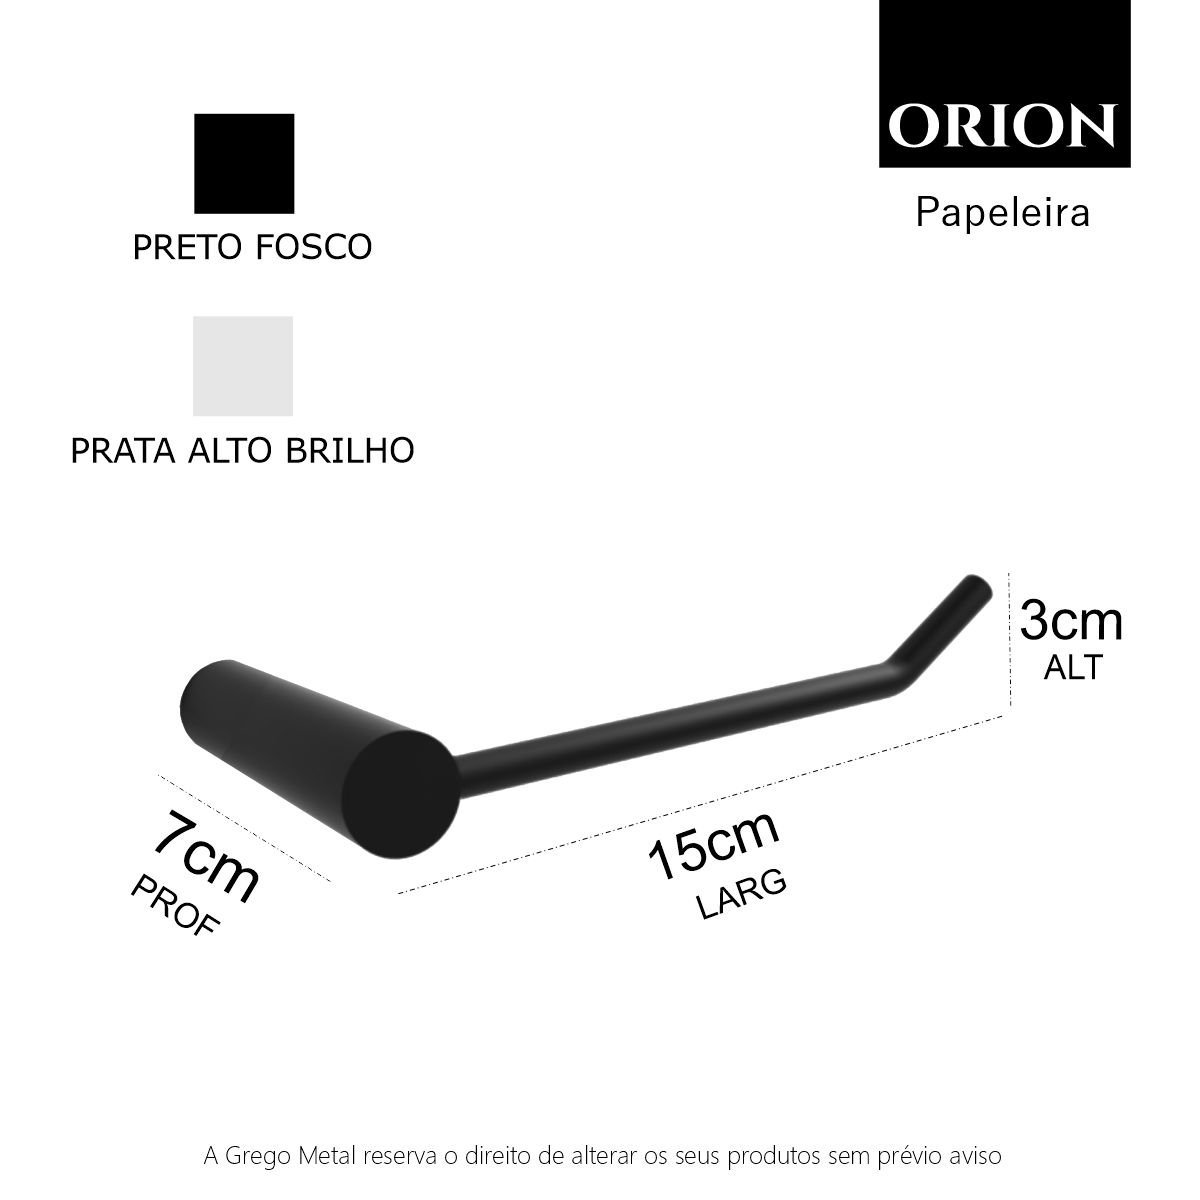 Papeleira para Banheiro Acessório Suporte Redondo Grego Metal Preto Fosco Modelo Orion - 5